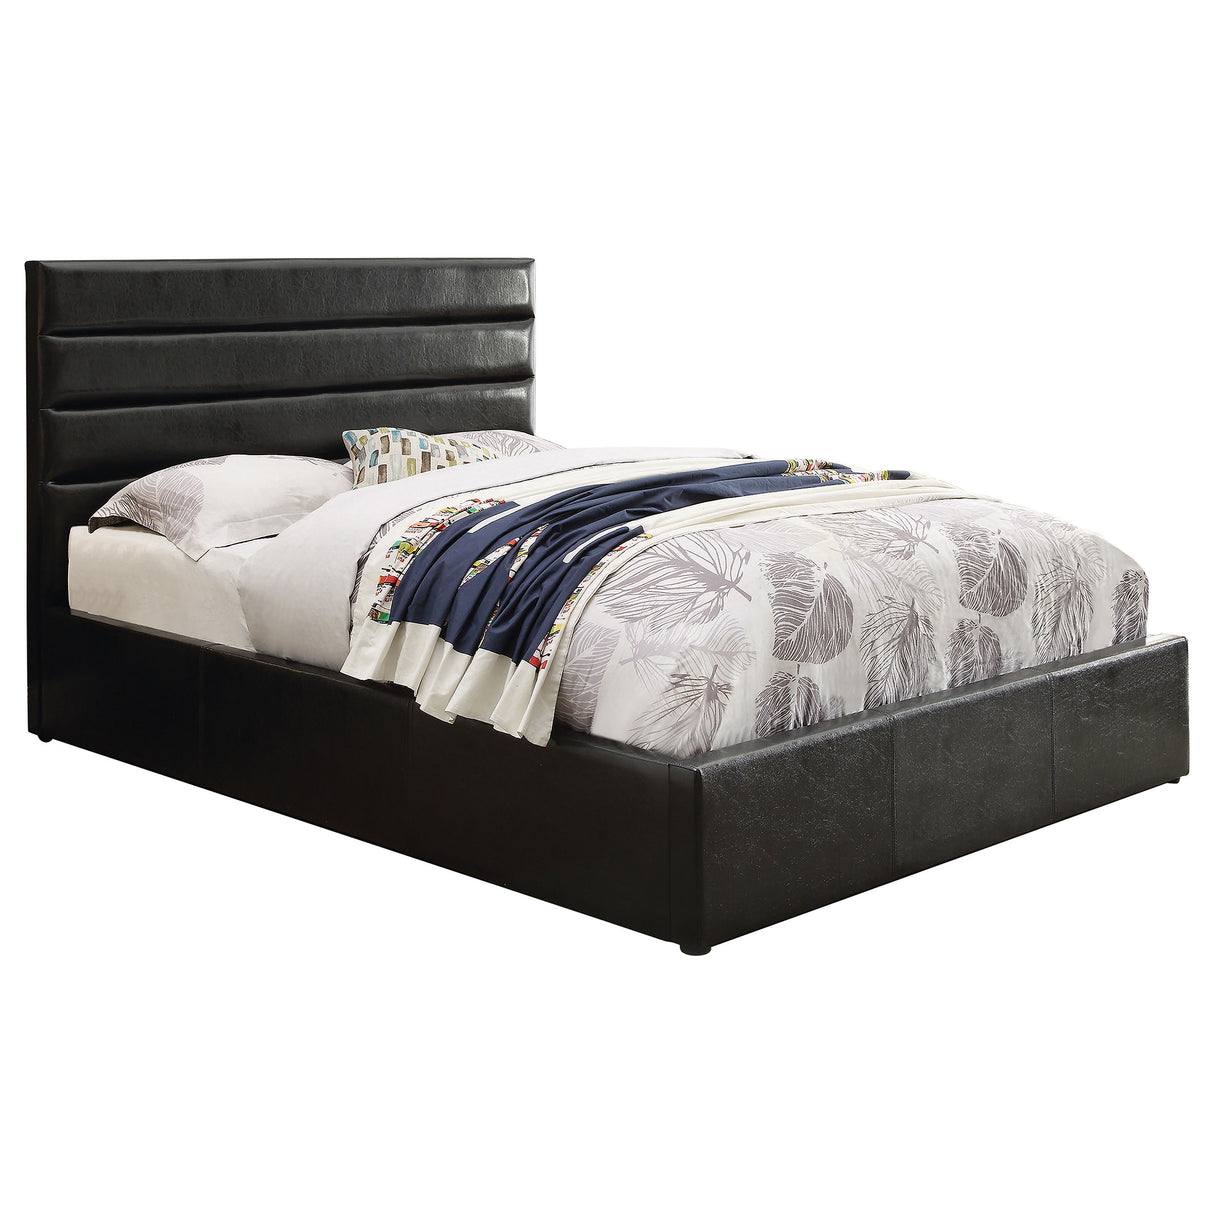 Full Storage Bed - Riverbend Upholstered Full Storage Panel Bed Black